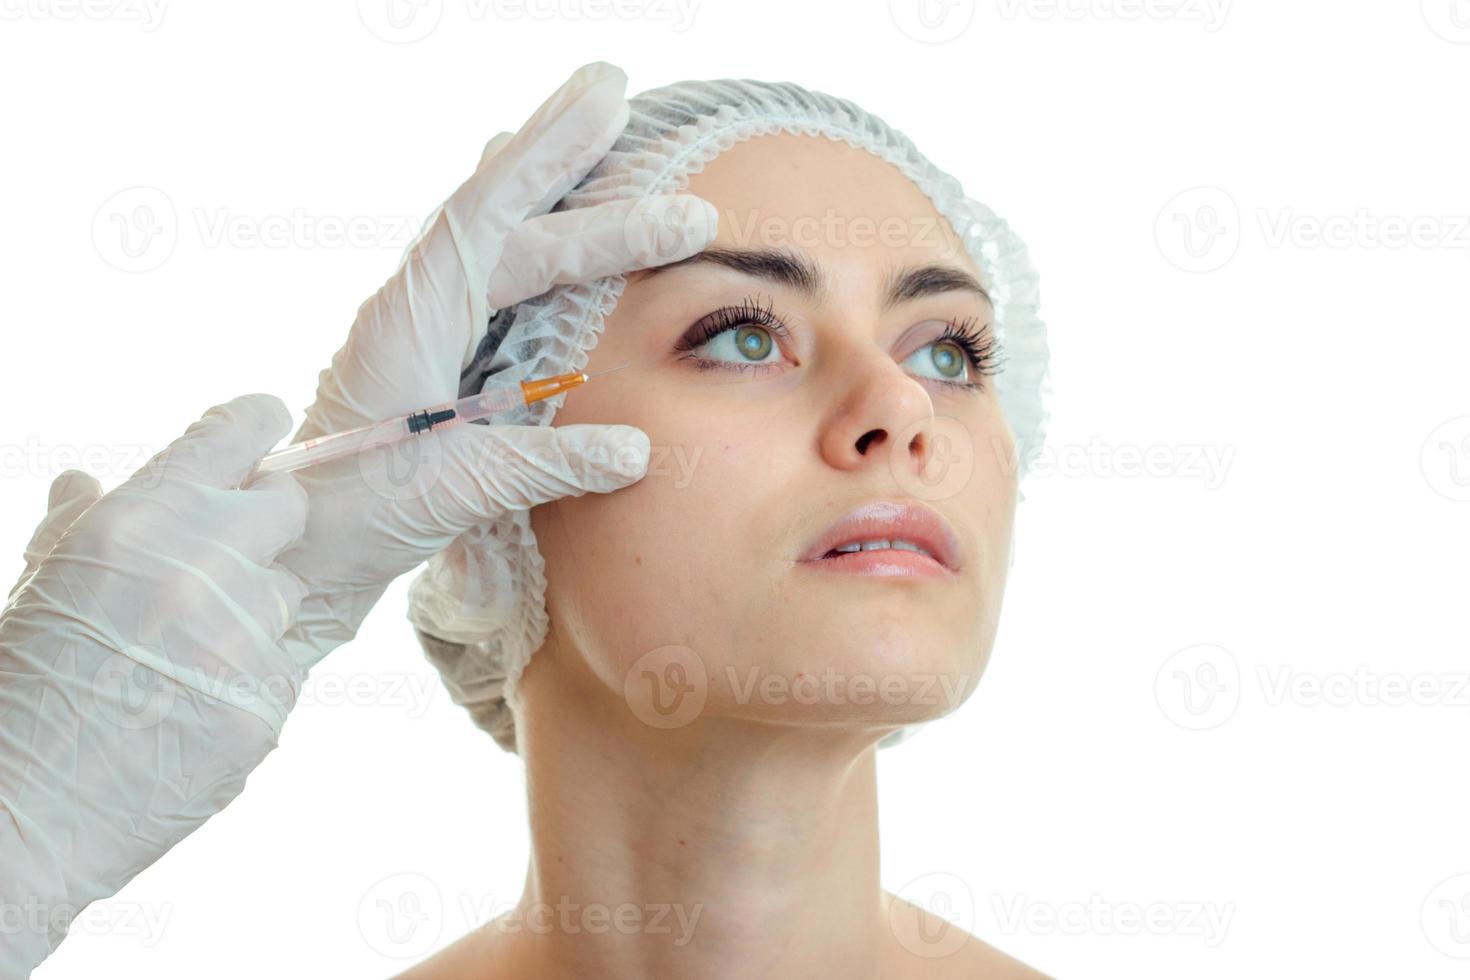 une jeune femme se fait piquer au visage par un médecin à la réception photo